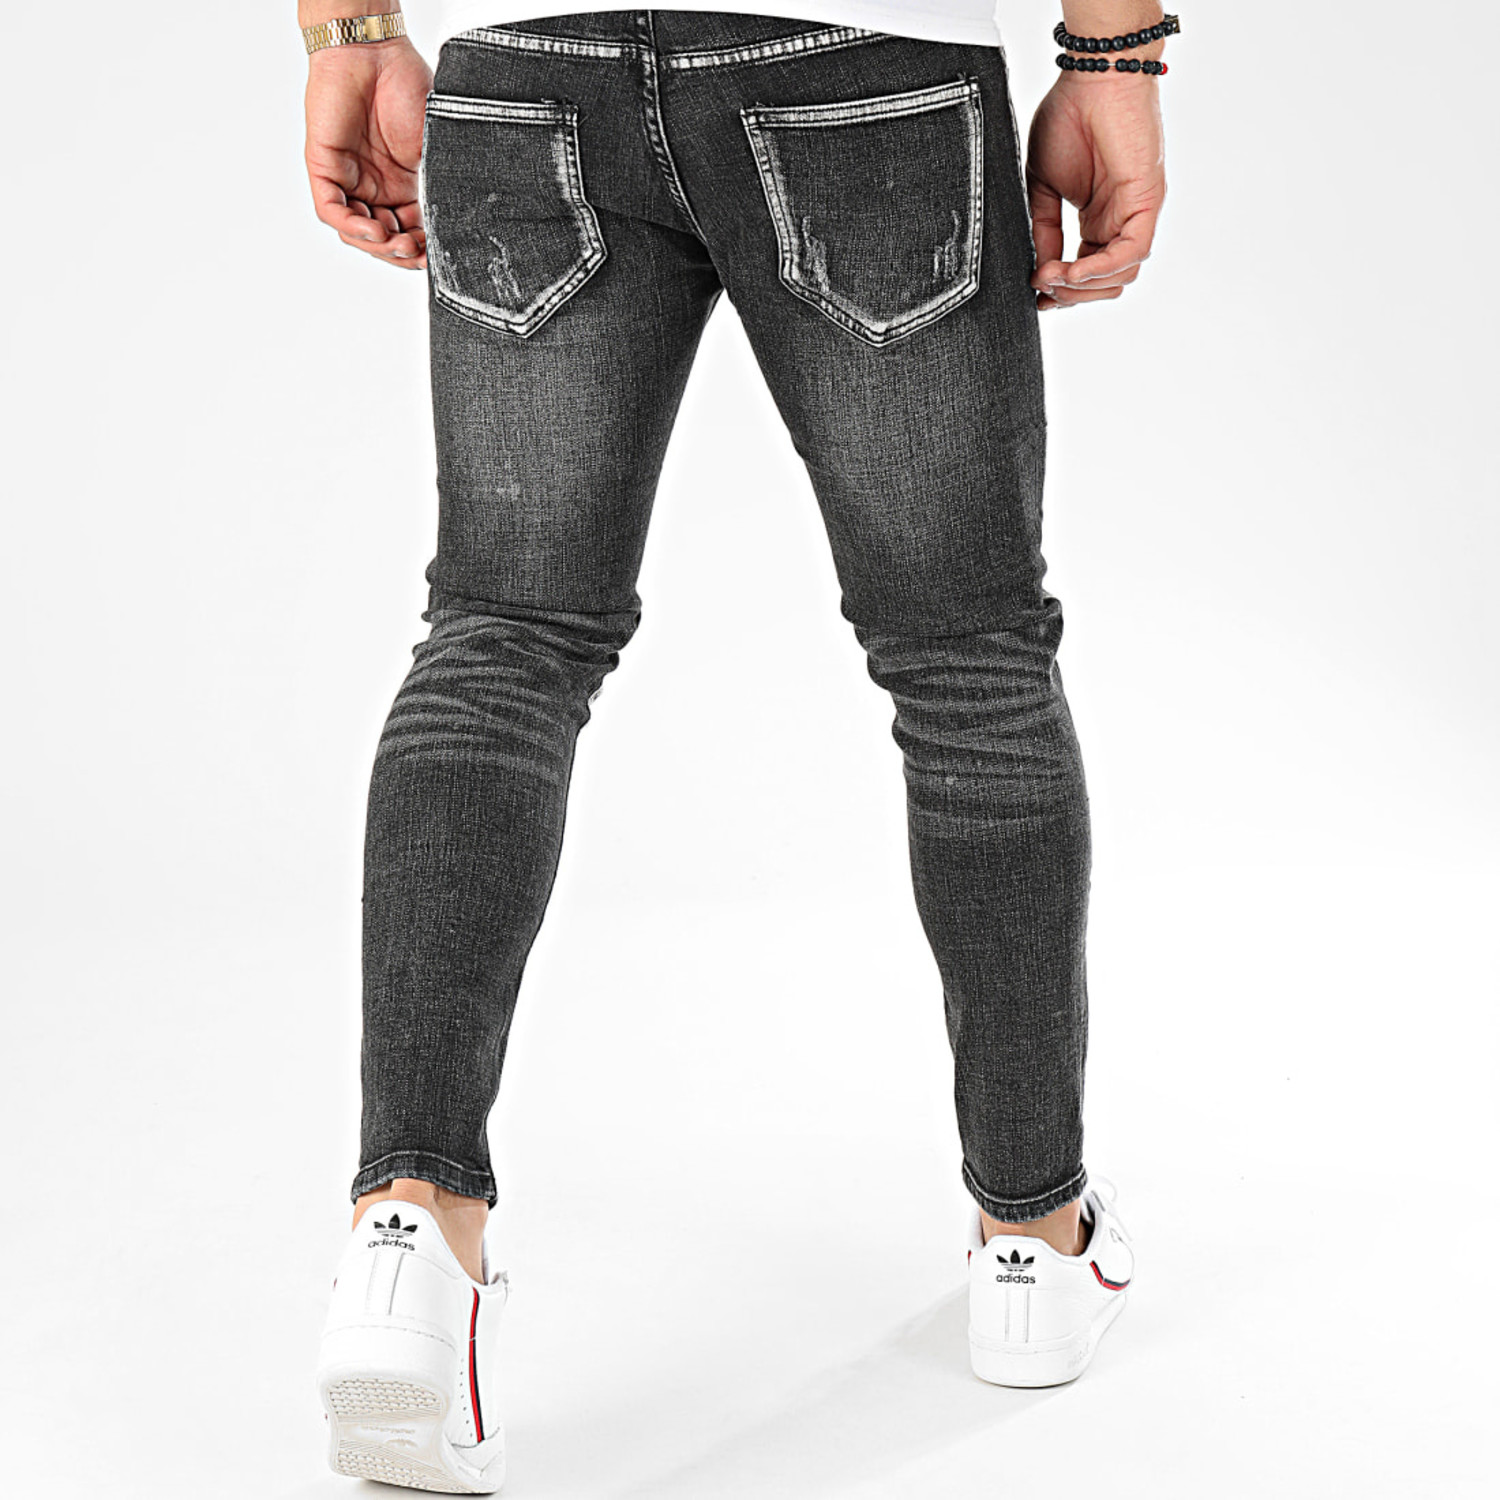 verzoek waterval Mier Heren Skinny Jeans Gescheurd - Gratis verzending - Bestel hier jeans -  VALENCI